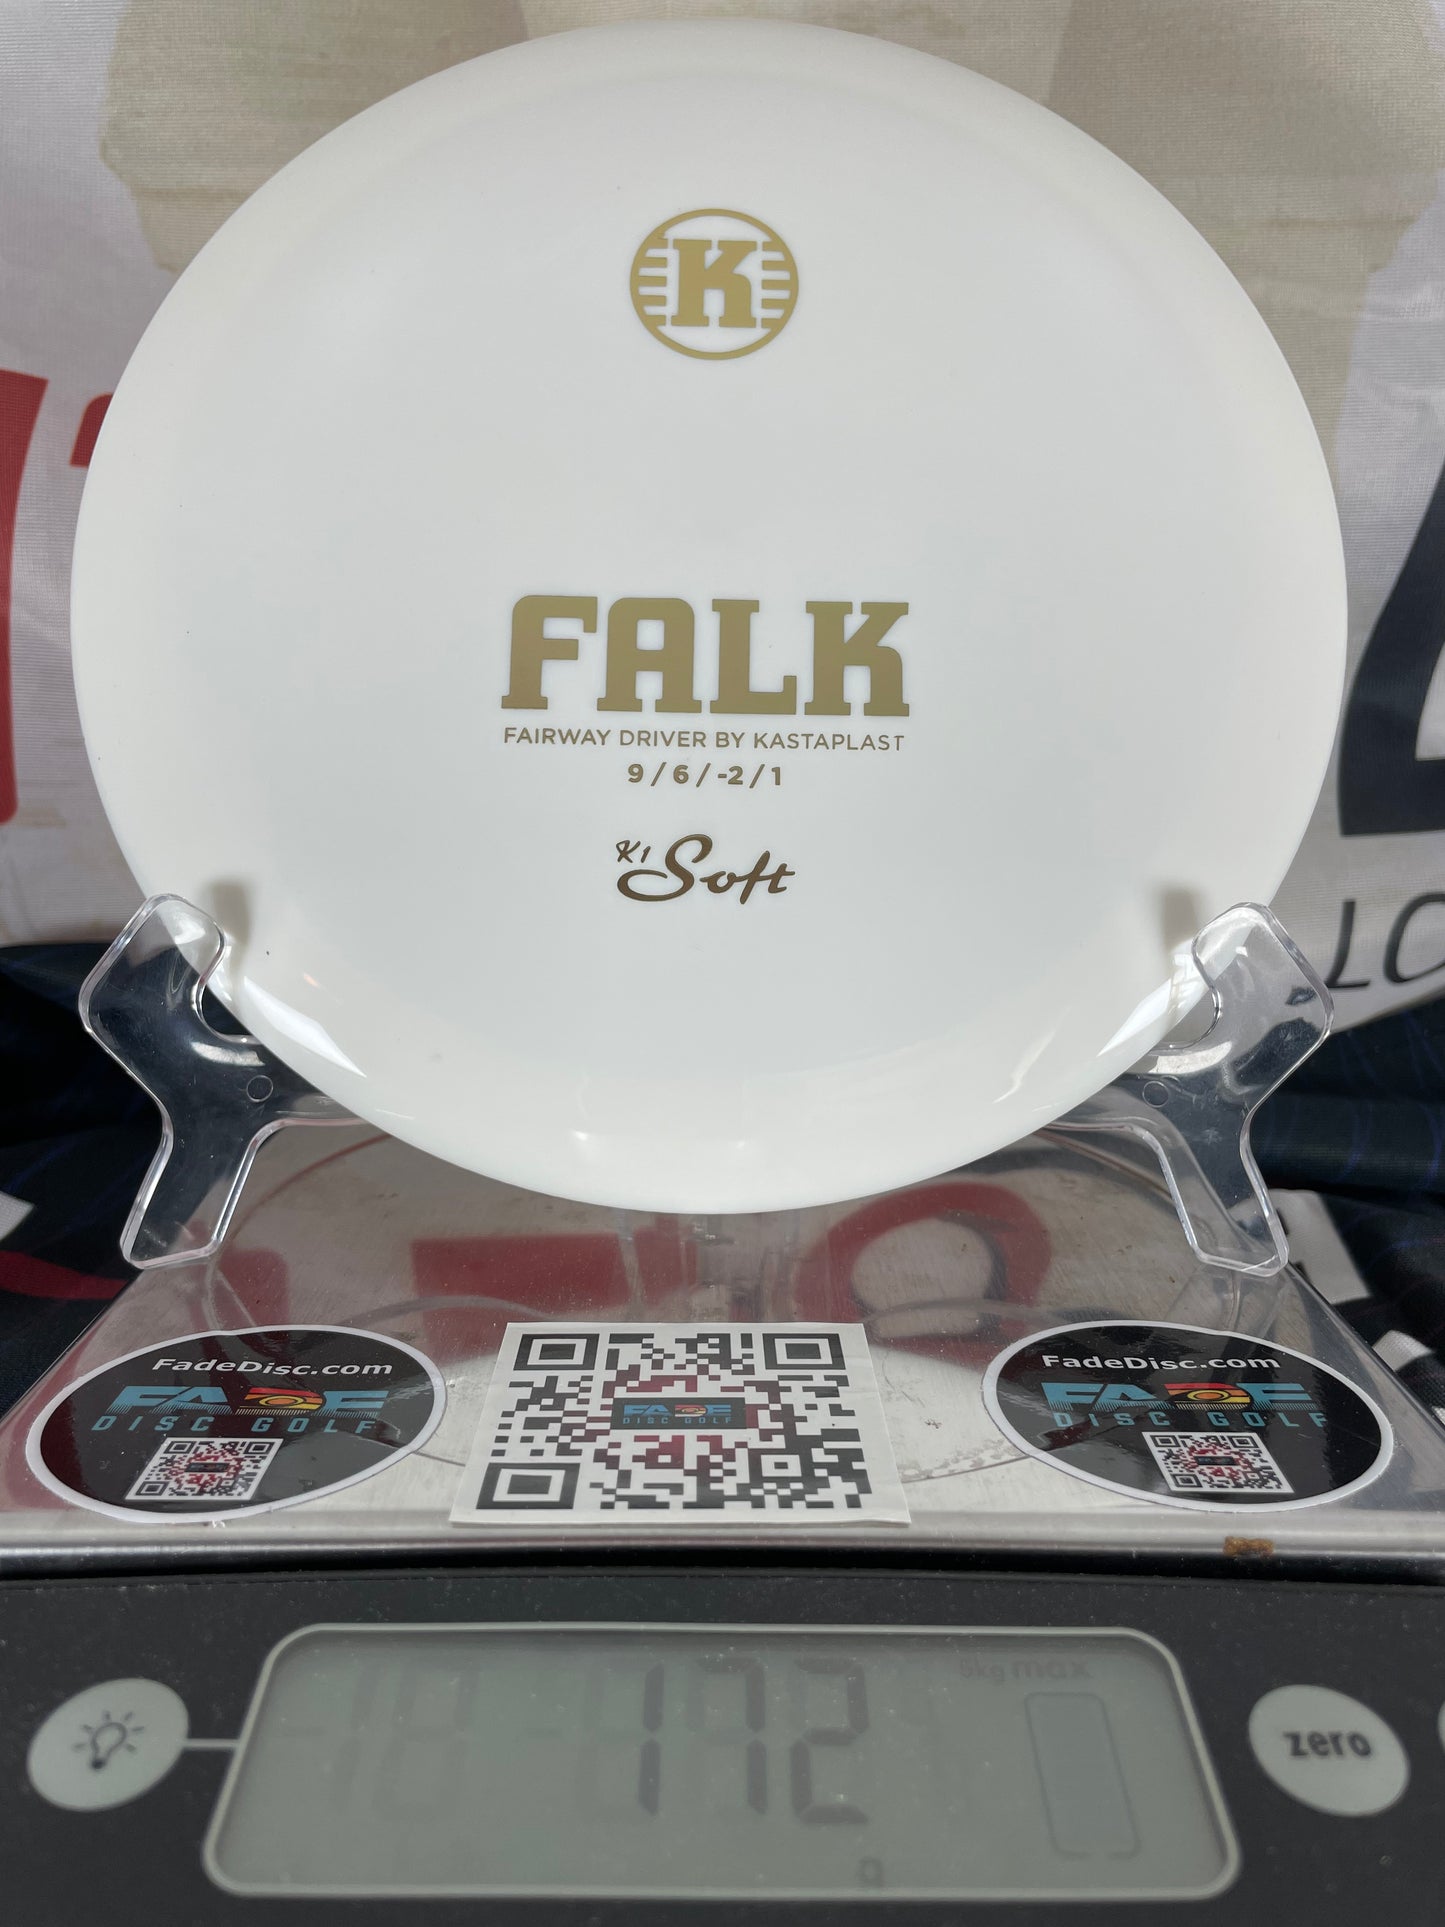 Kastaplast Falk K1 172g White w/ Gold Foil Fairway Driver